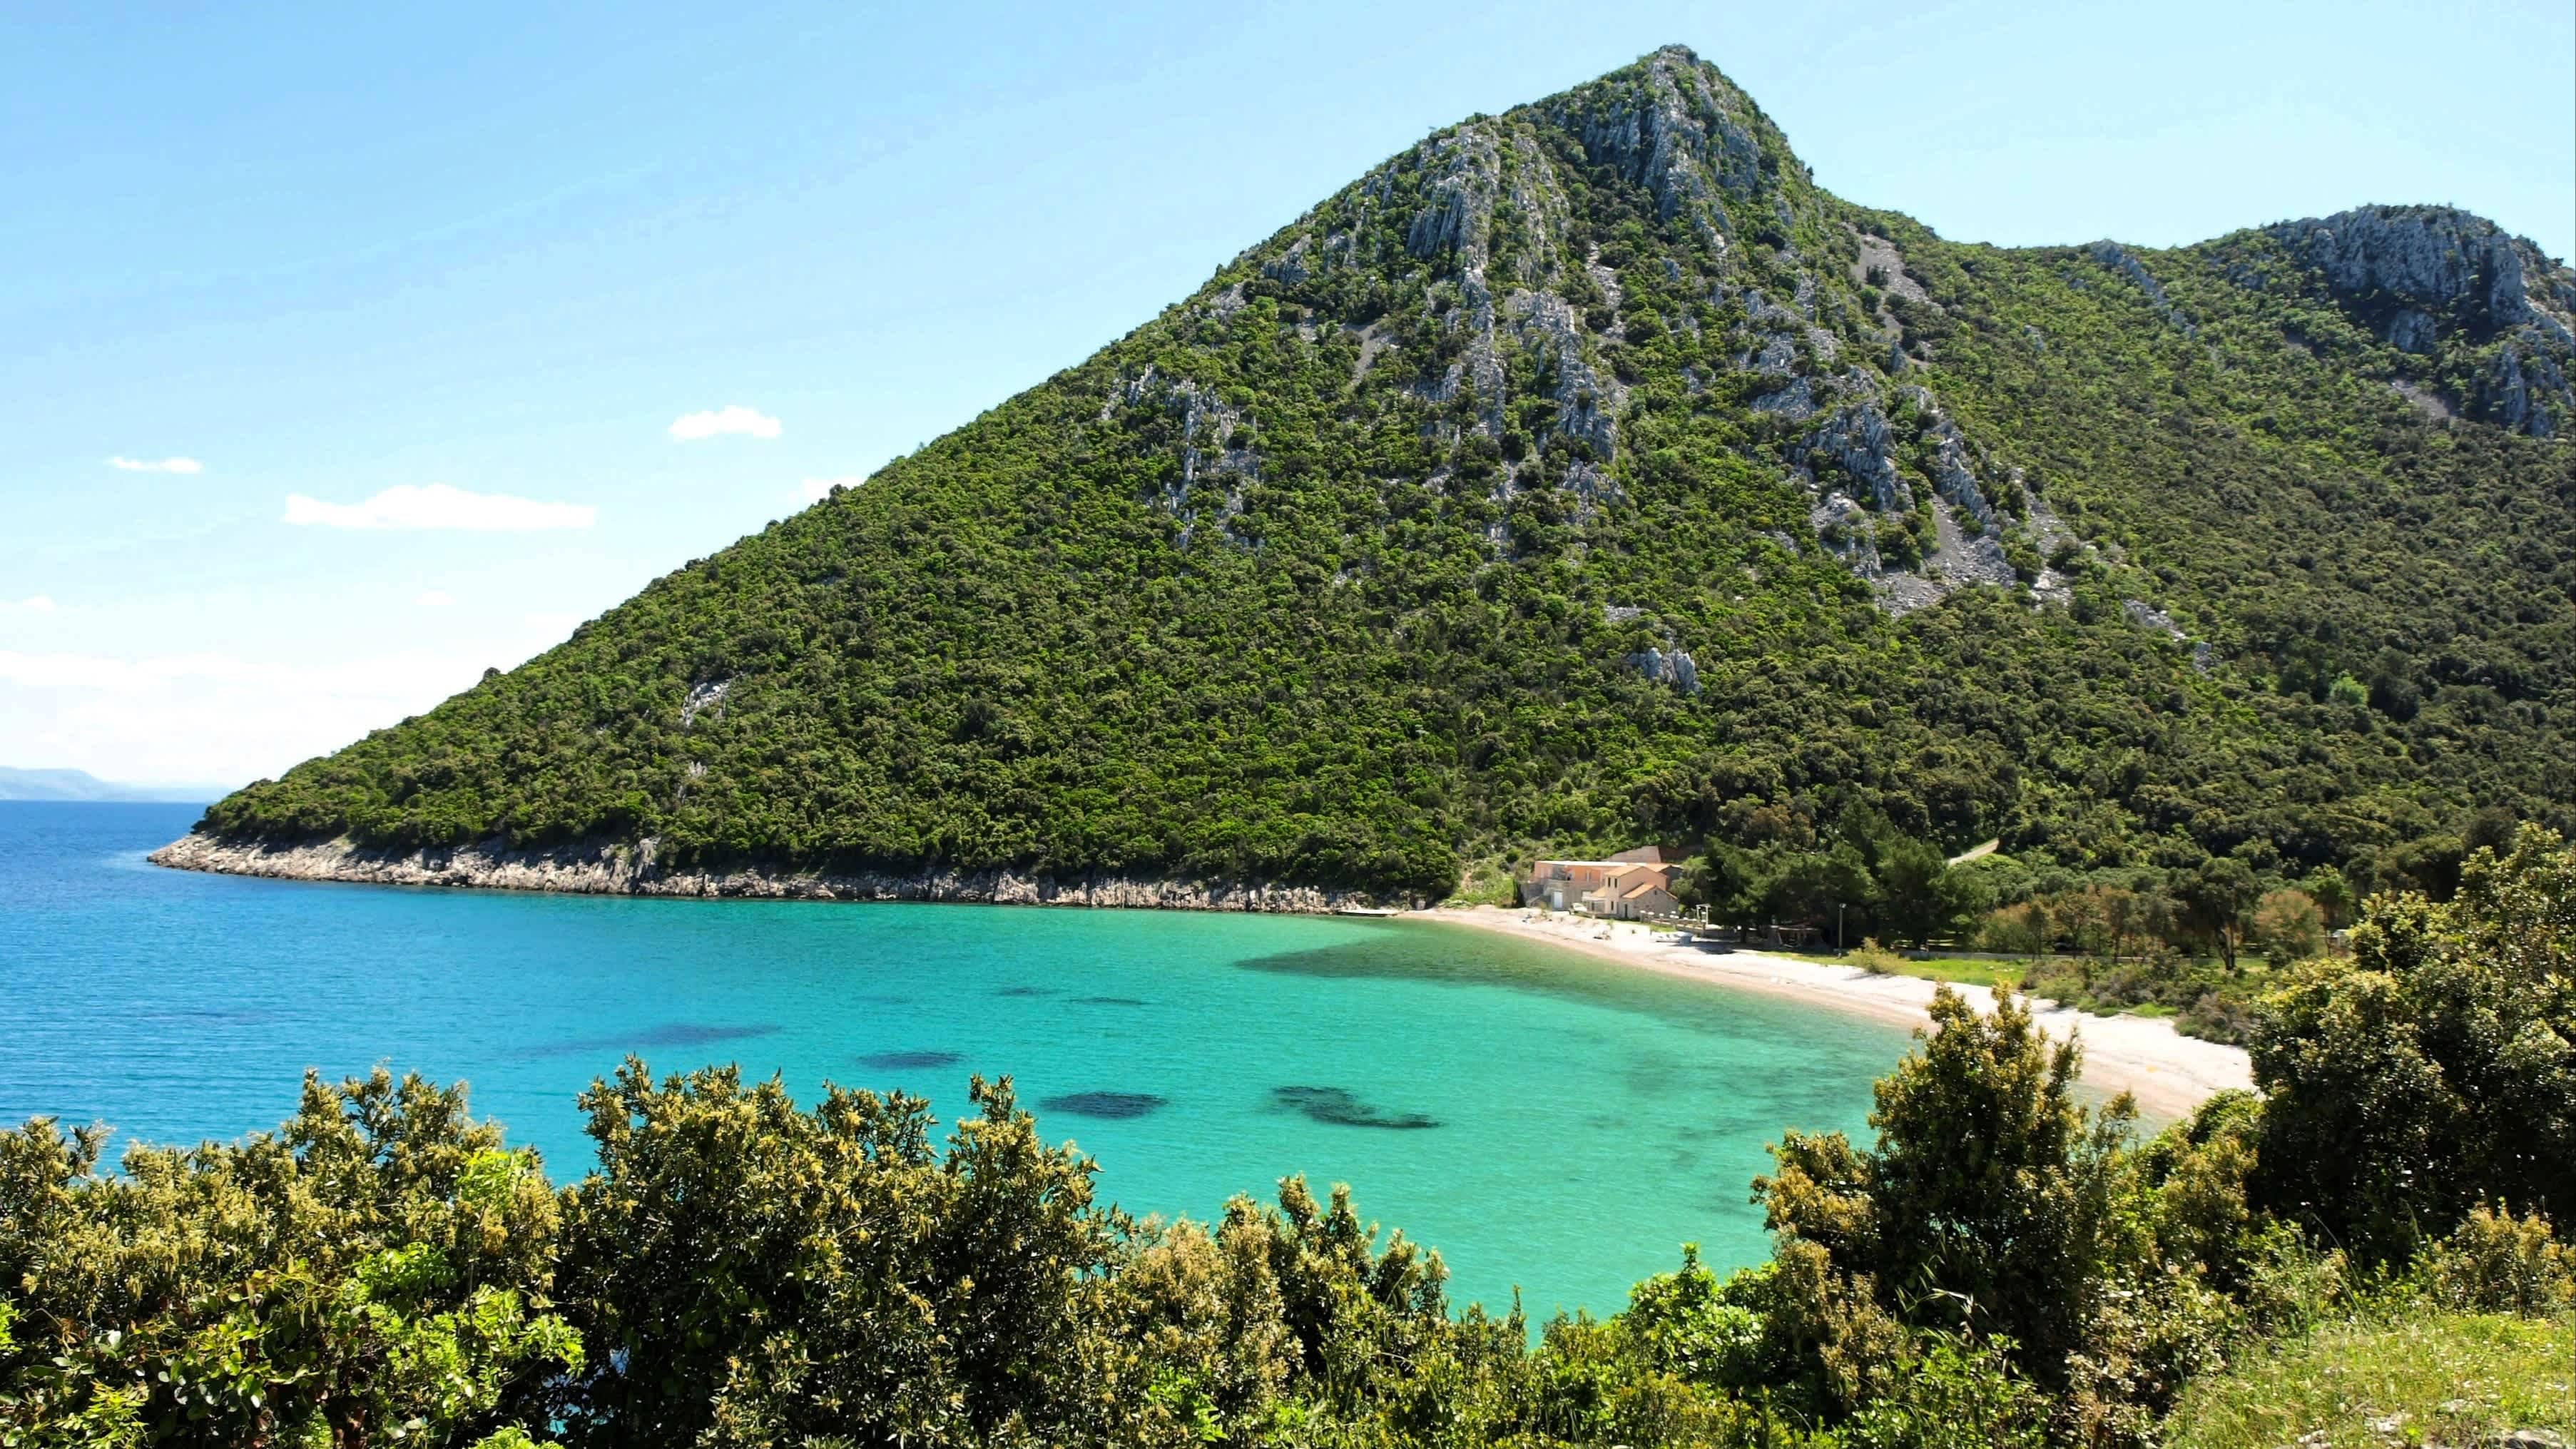 Der Strand von Divna, Halbinsel Pelješac, Kroatien mit Blick auf einen hohen Berg und das türkise Wasser.